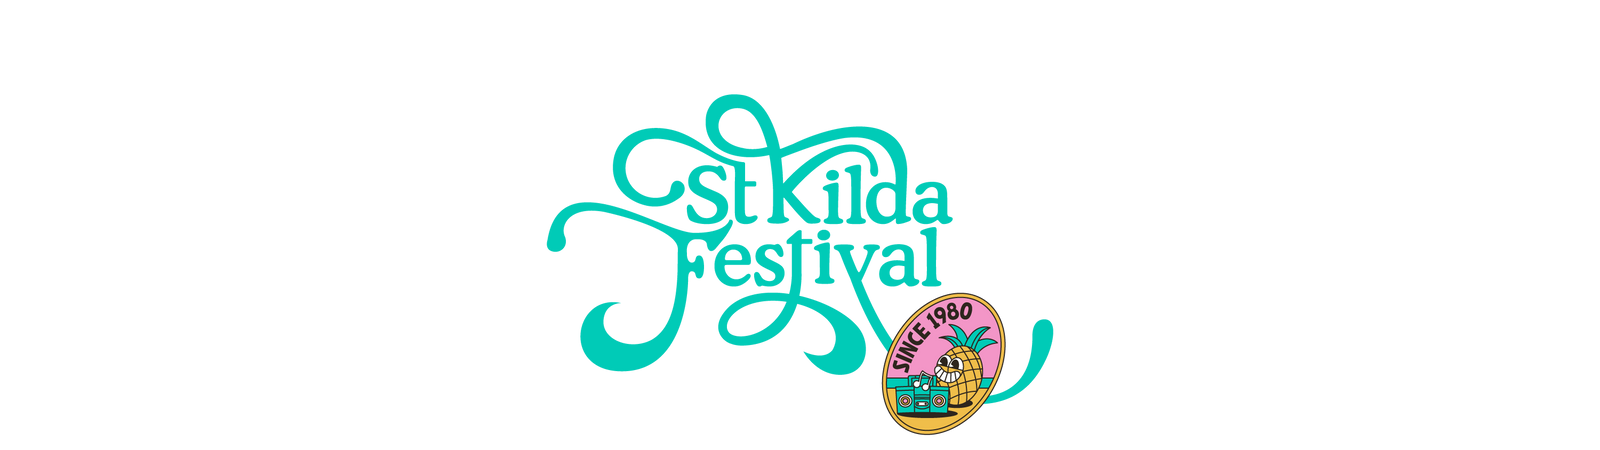 St Kilda Festival